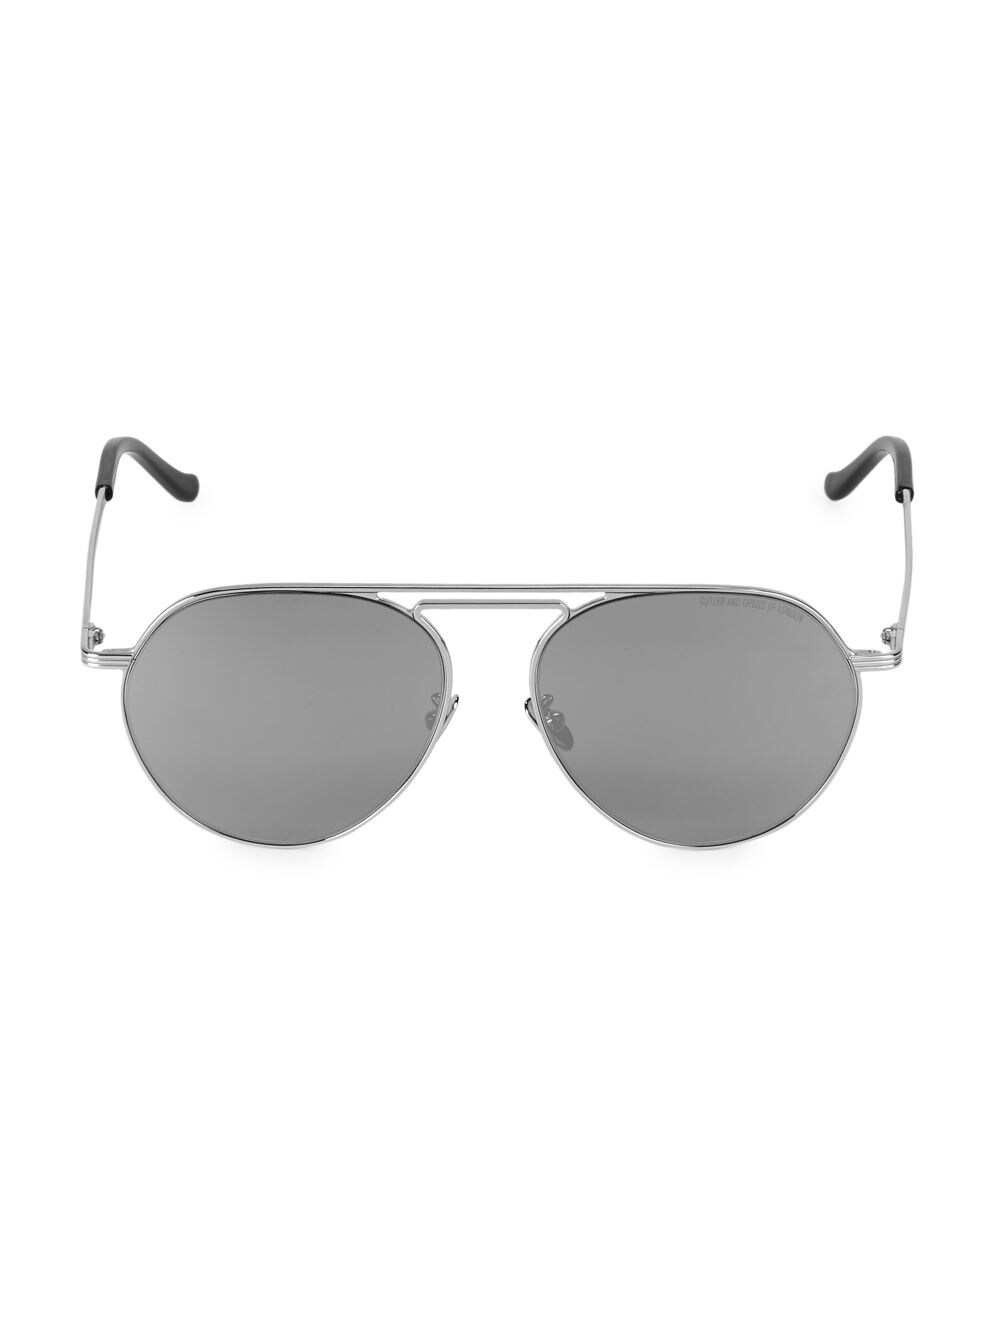 Металлические солнцезащитные очки-авиаторы 58 мм Cutler and Gross, серебряный прозрачные 9768 очки cutler and gross